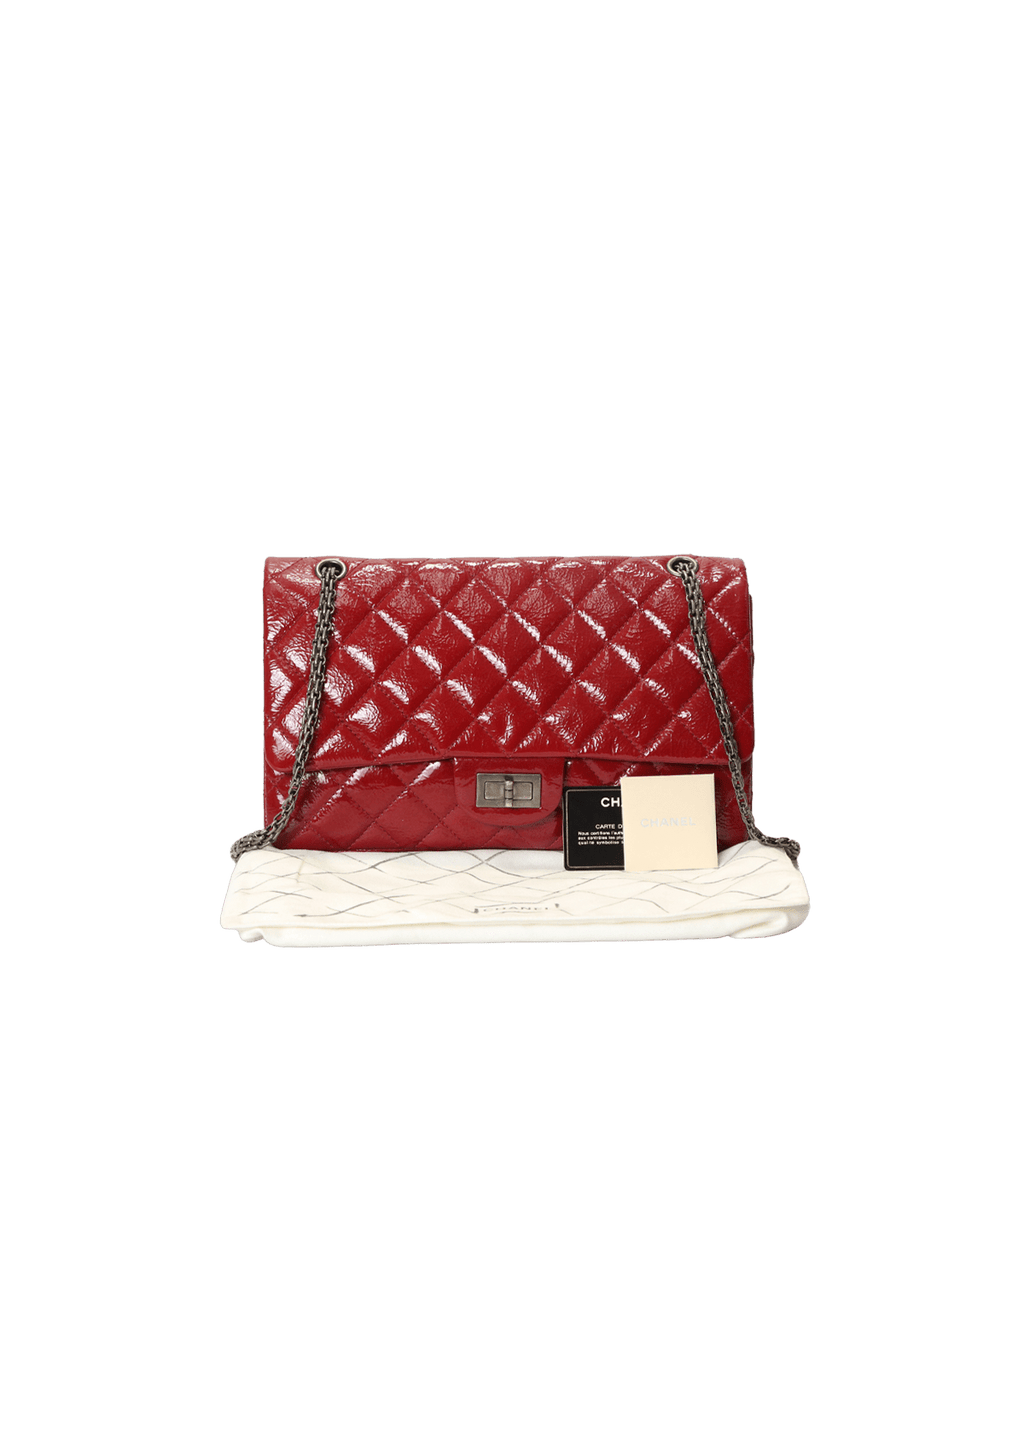 Bolsa Chanel 2.55 Reissue 227 Classic Double Flap Vermelha Original – Gringa